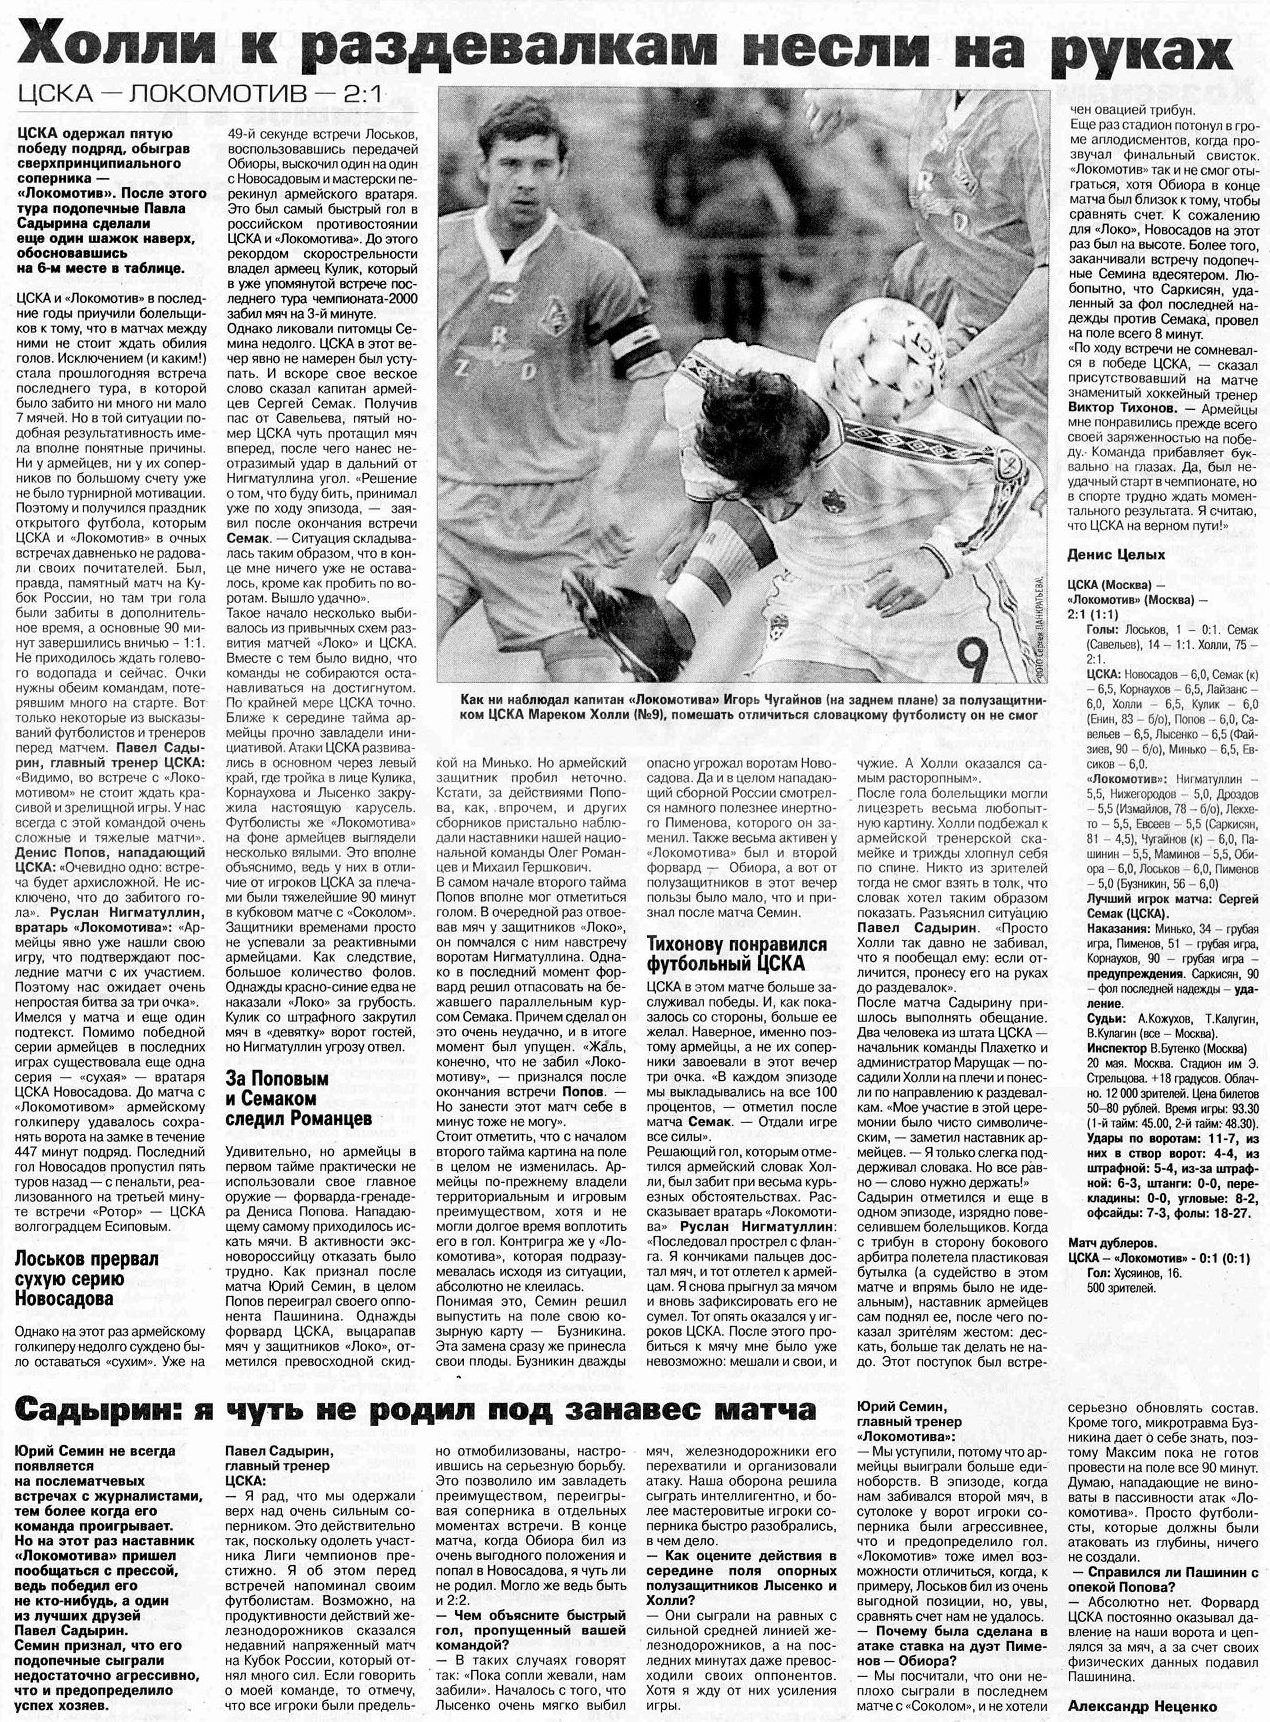 2001-05-20.CSKA-LokomotivM.2